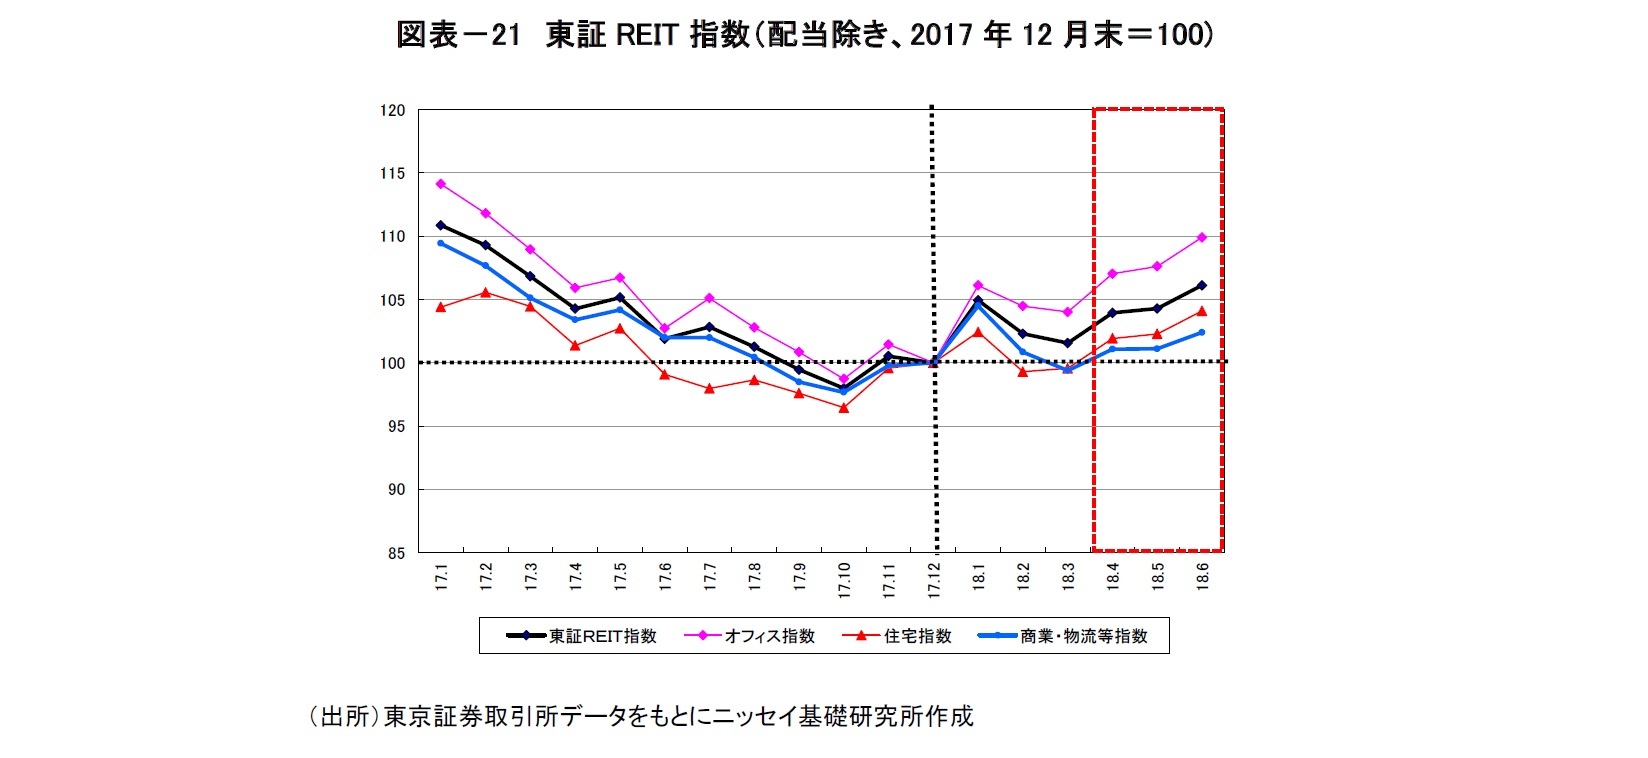 図表－21　東証REIT指数（配当除き、2017年12月末＝100)